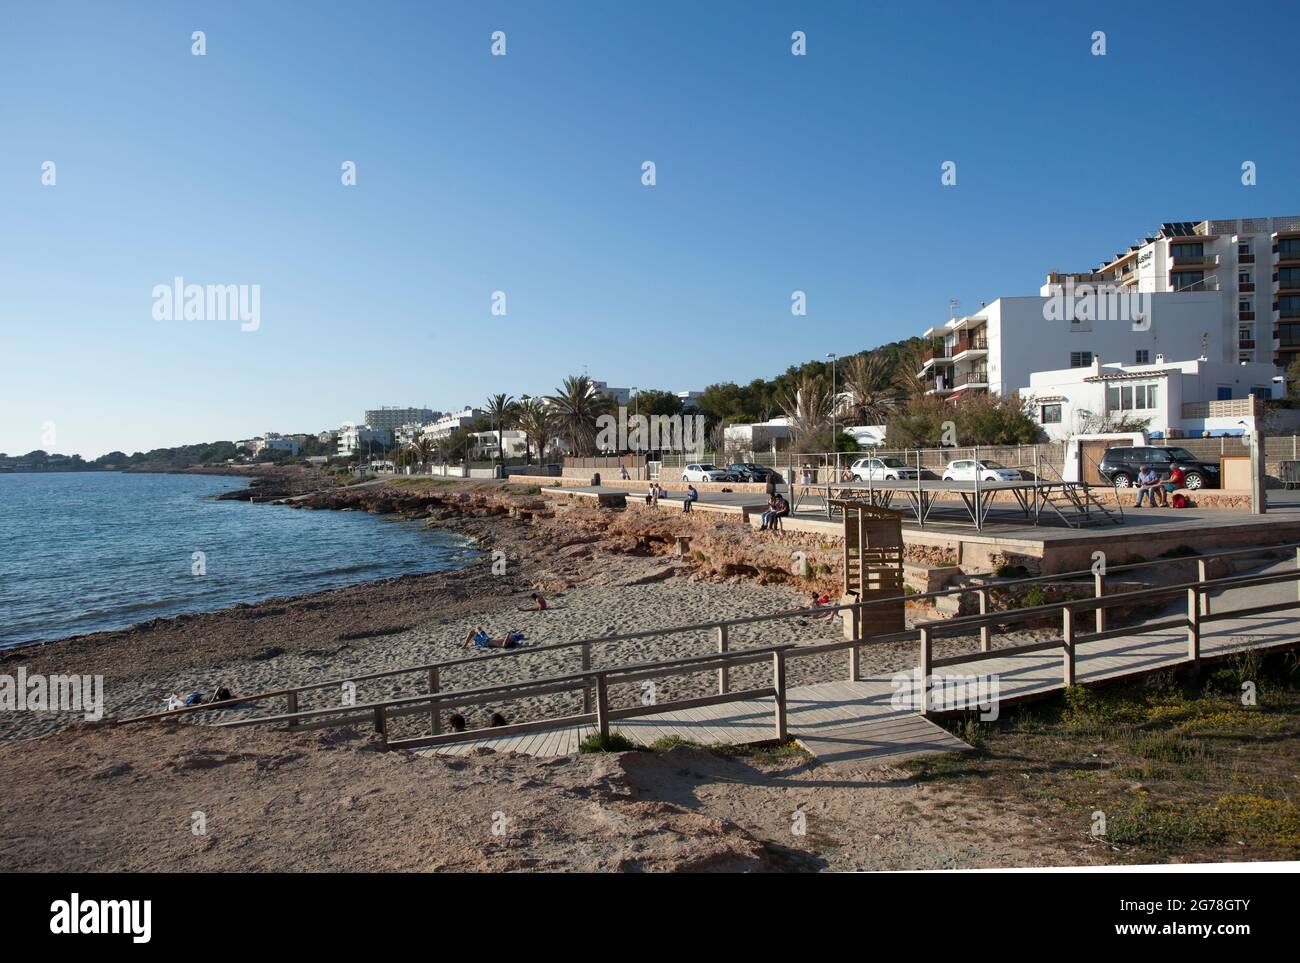 Small town beach, Sant Antoni de Portmany, Ibiza Stock Photo